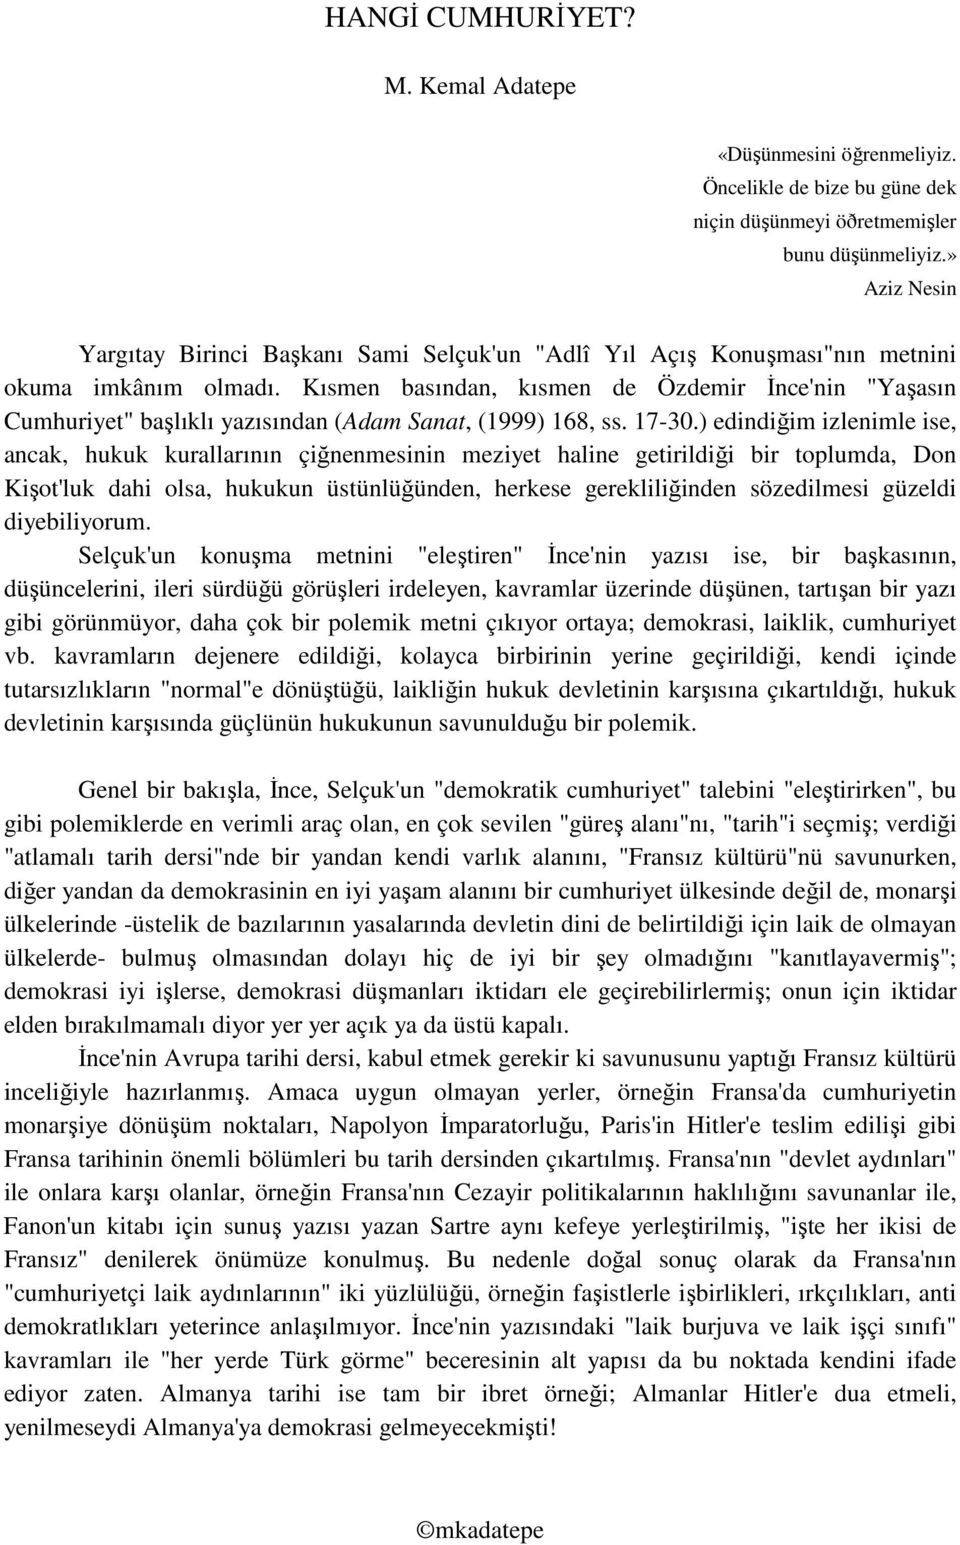 Kısmen basından, kısmen de Özdemir İnce'nin "Yaşasın Cumhuriyet" başlıklı yazısından (Adam Sanat, (1999) 168, ss. 17-30.